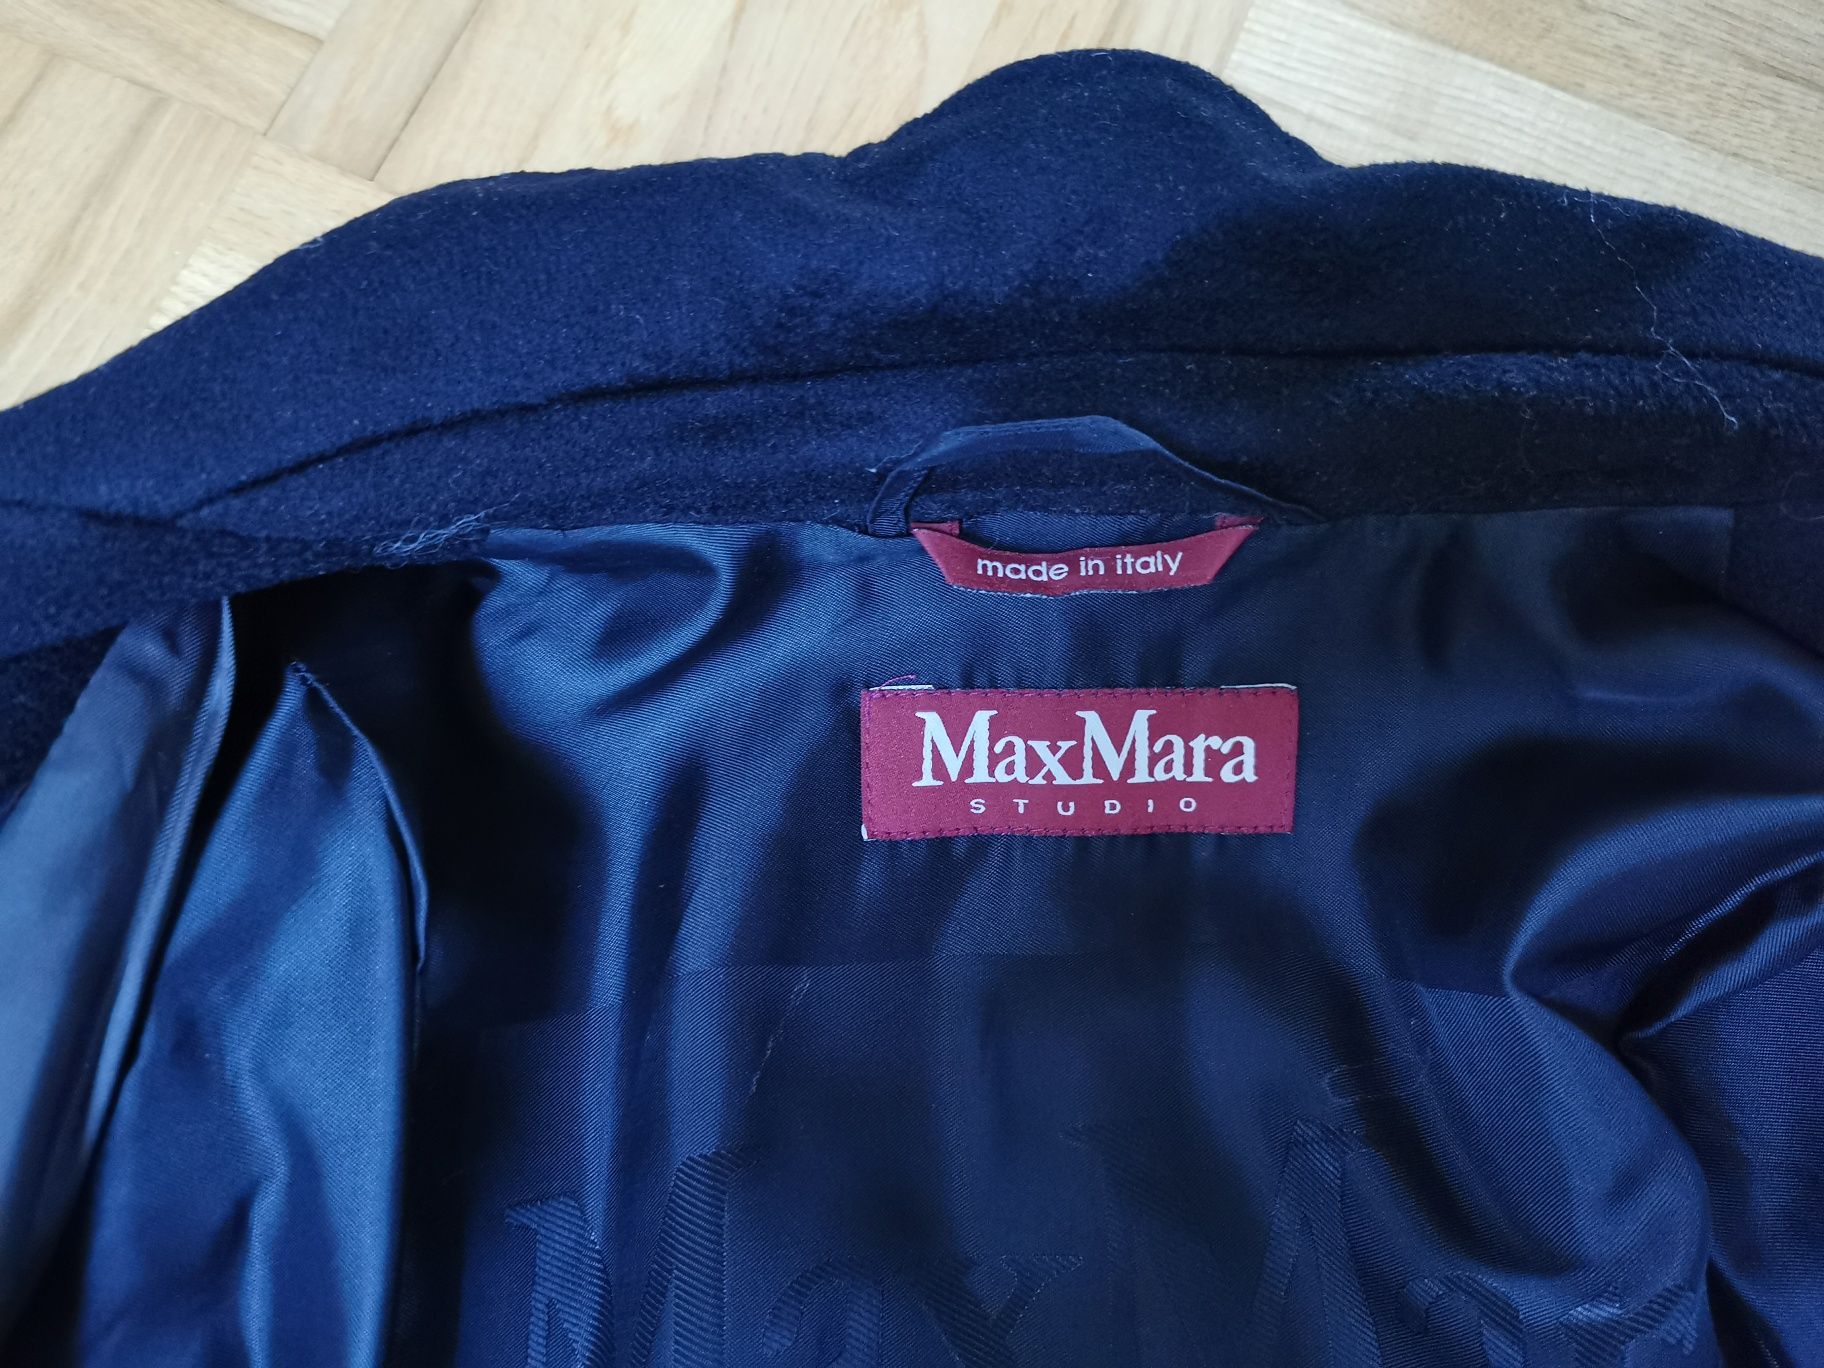 Płaszcz Maxmara, wełna